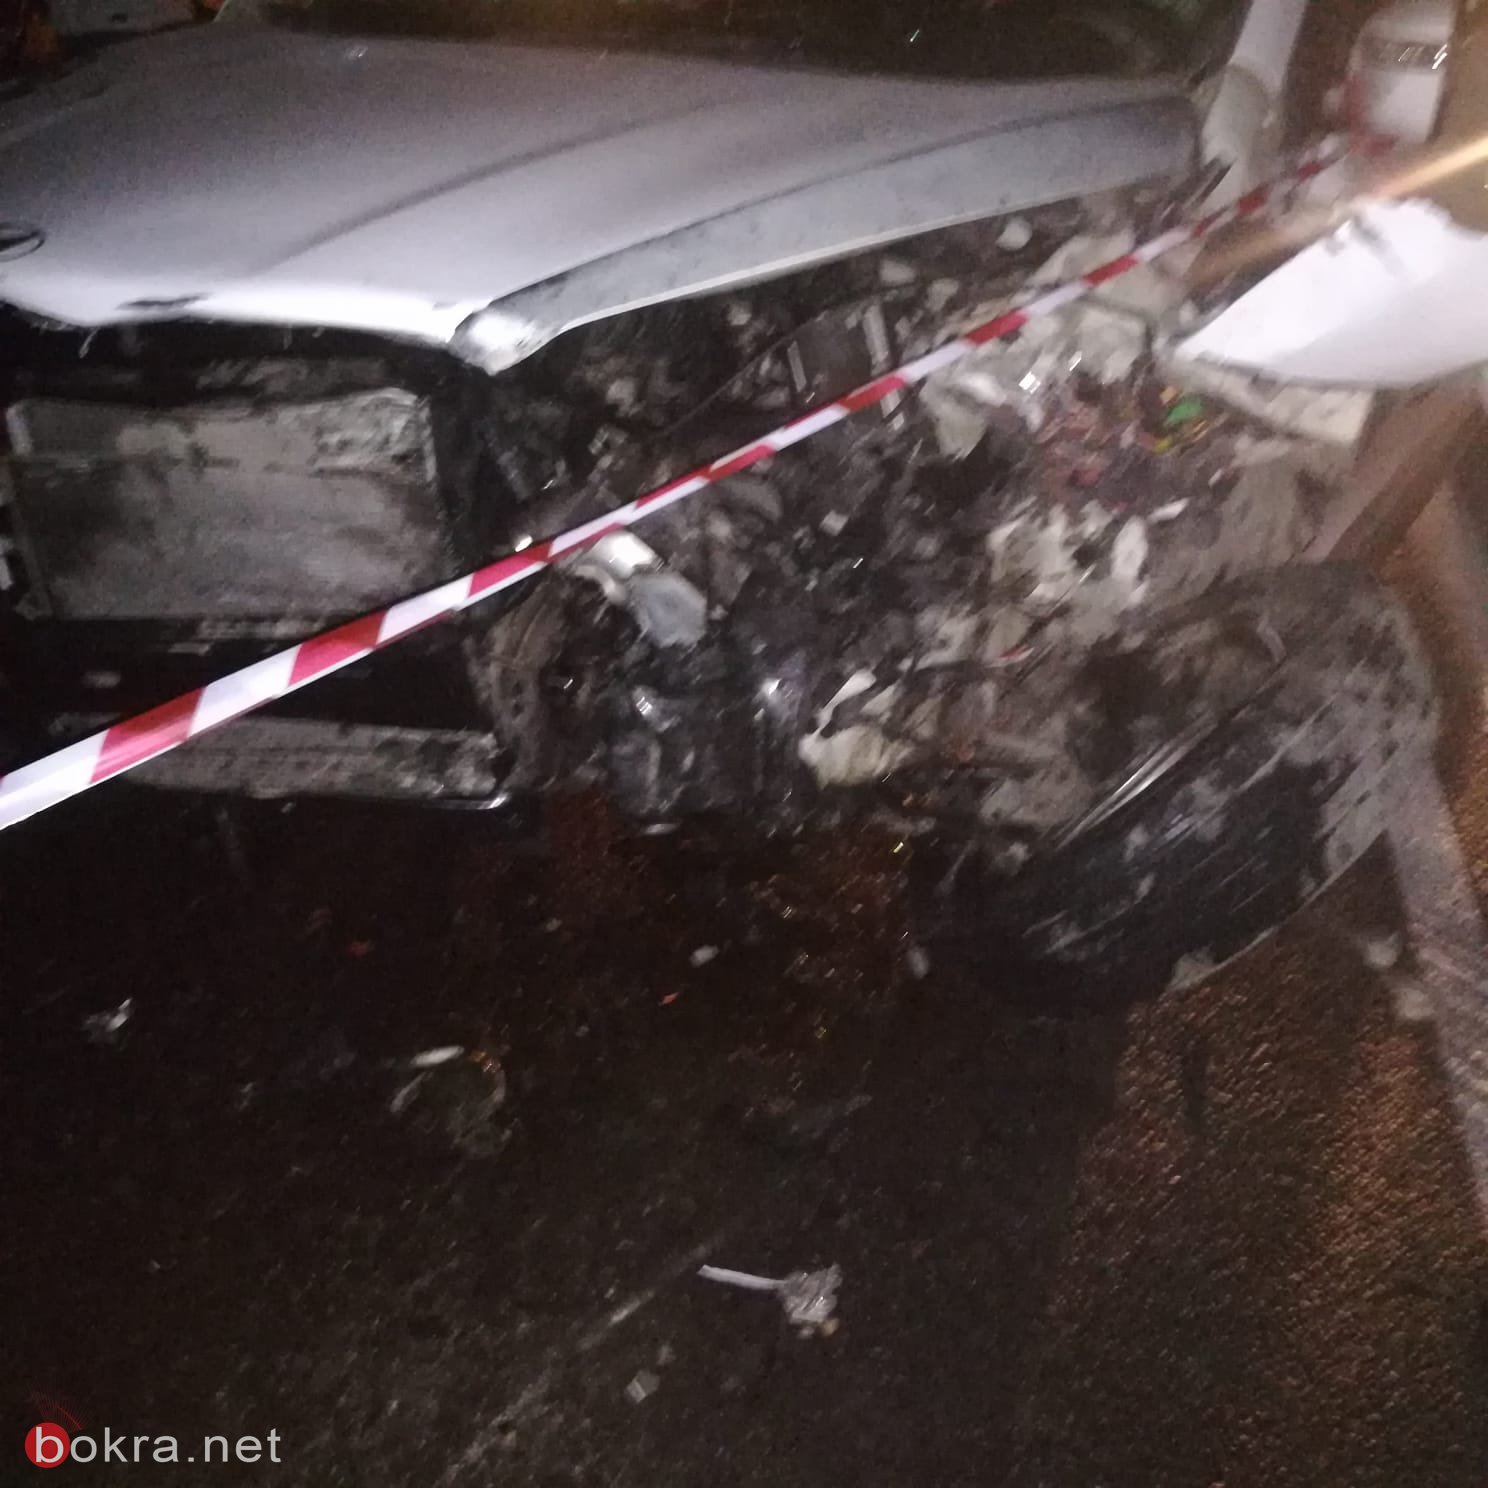 مصرع مواطنة واصابة 4 بحادث سير شرق قلقيلية .-0